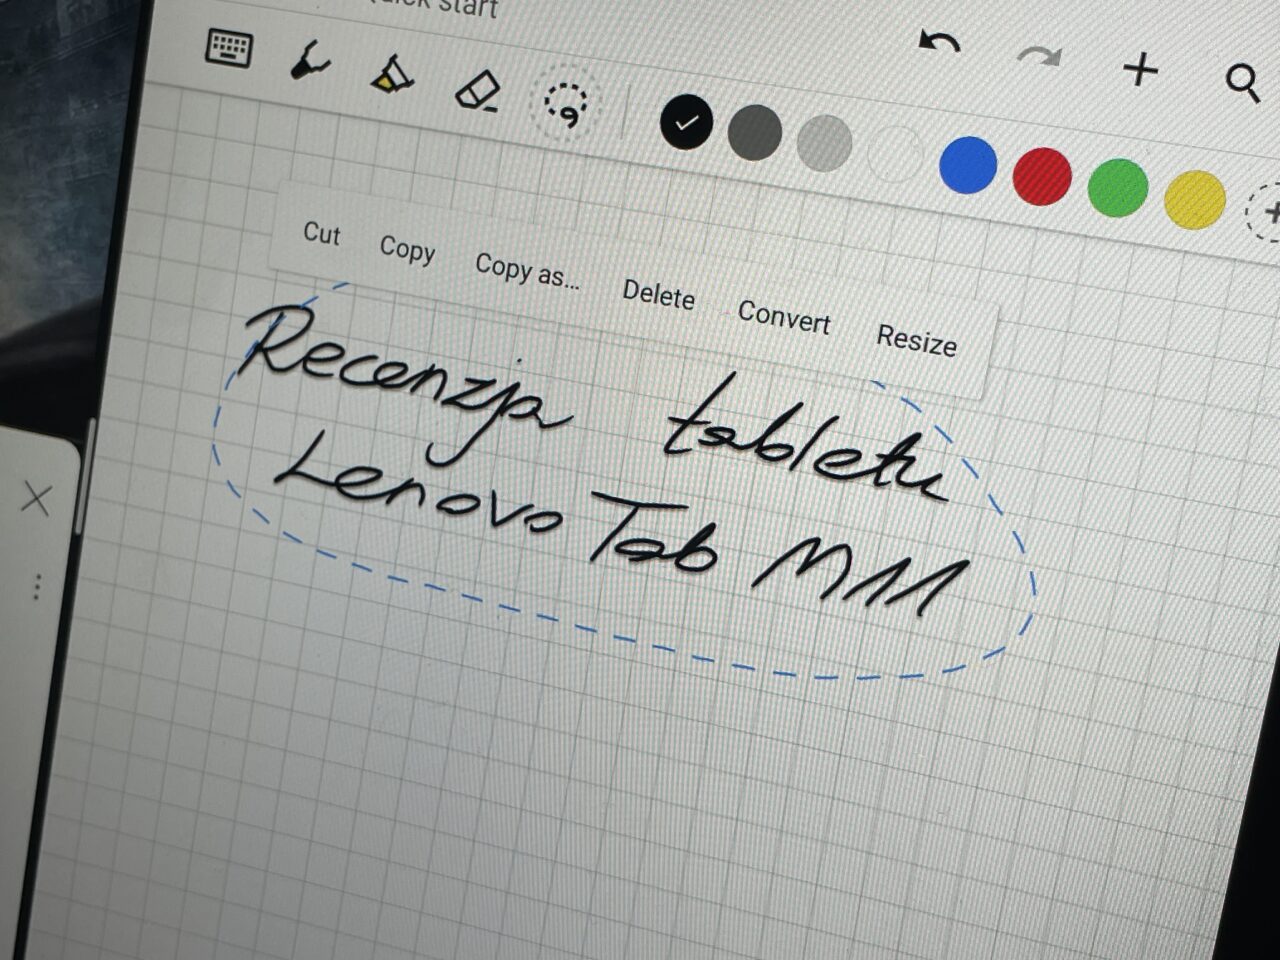 Ręcznie pisany tekst "Recenzja tabletu Lenovo Tab M8" otoczony niebieską, przerywaną linią na ekranie tabletu z otwartym programem do rysowania.